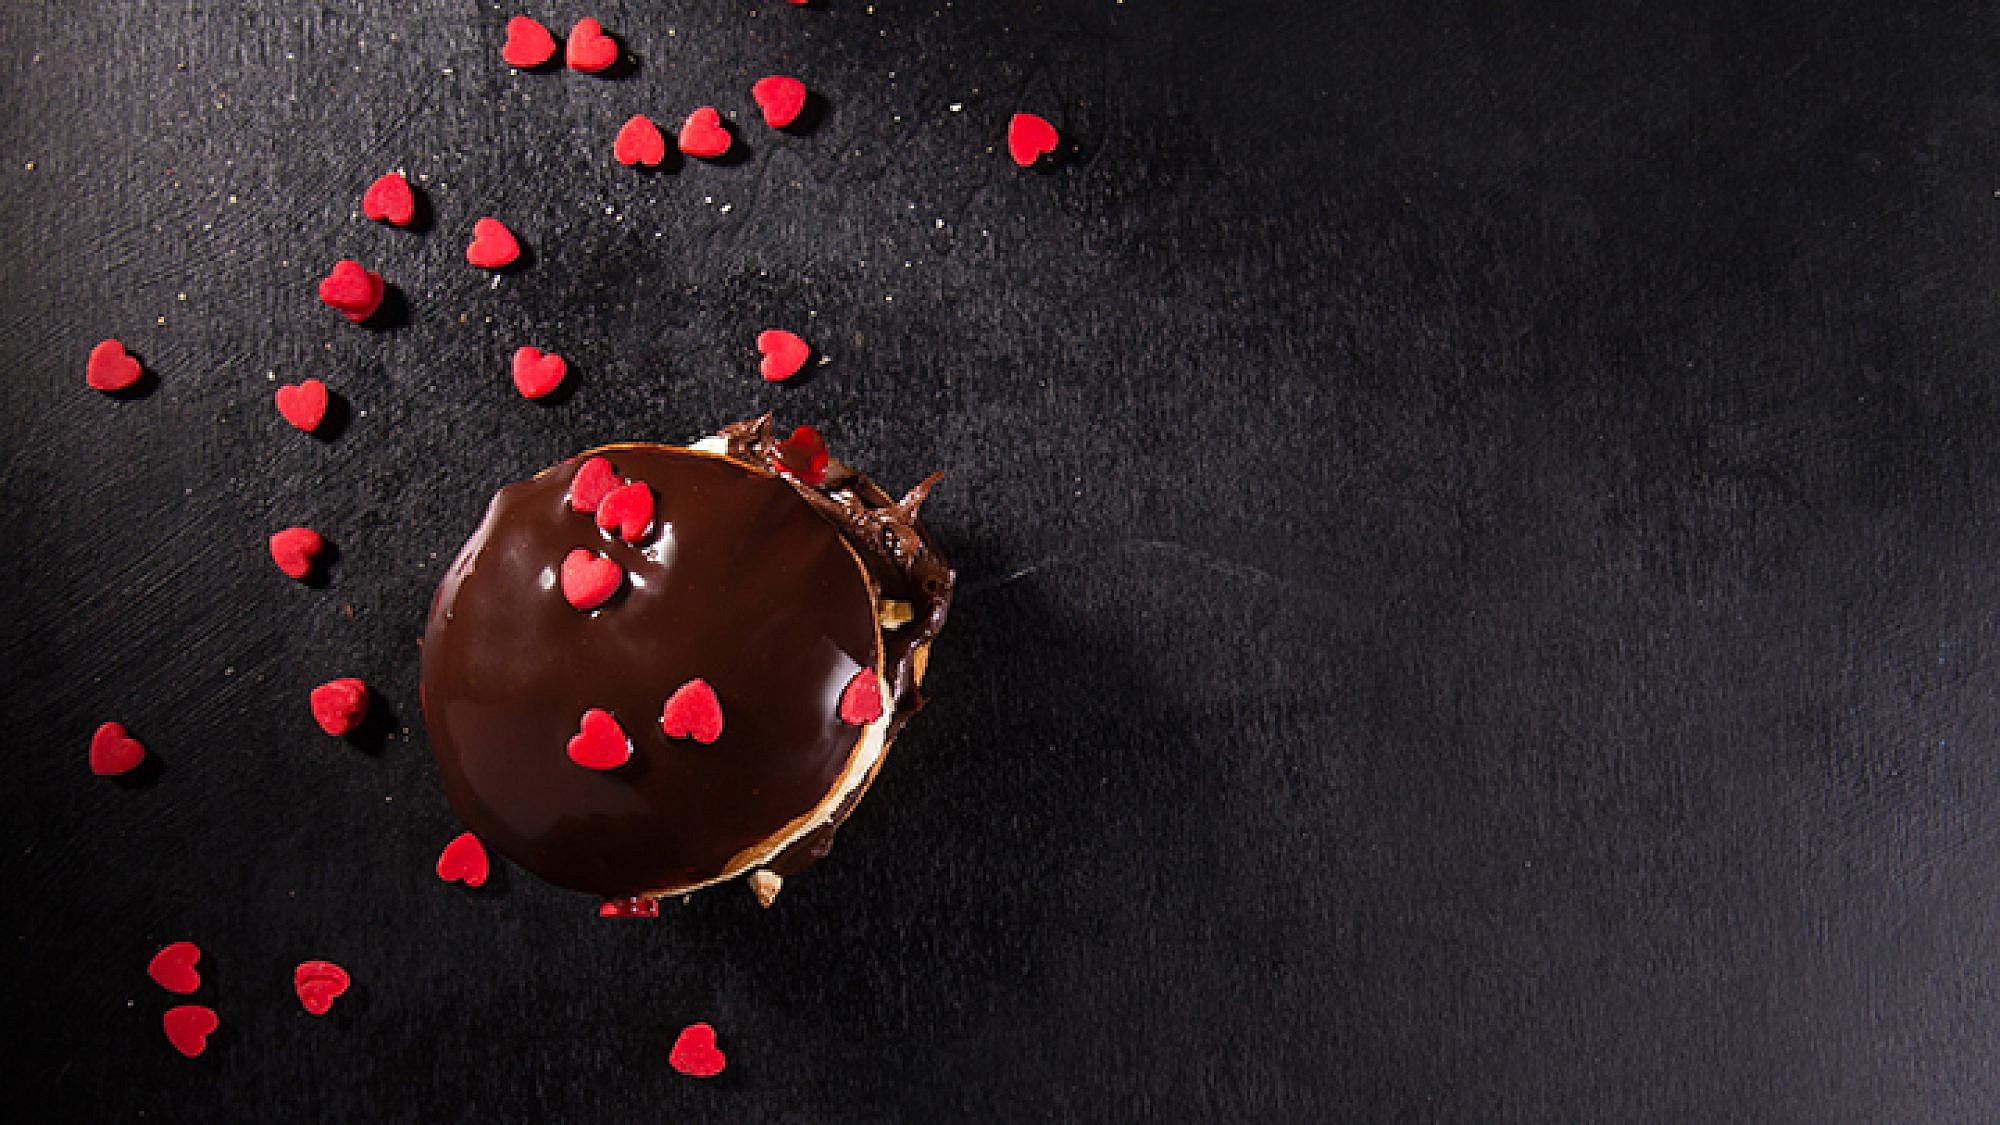 סופגניית בריוש במילוי גנאש שוקולד ופירות טריים | צילום: שרית גופן | סטיילינג: ענת לבל